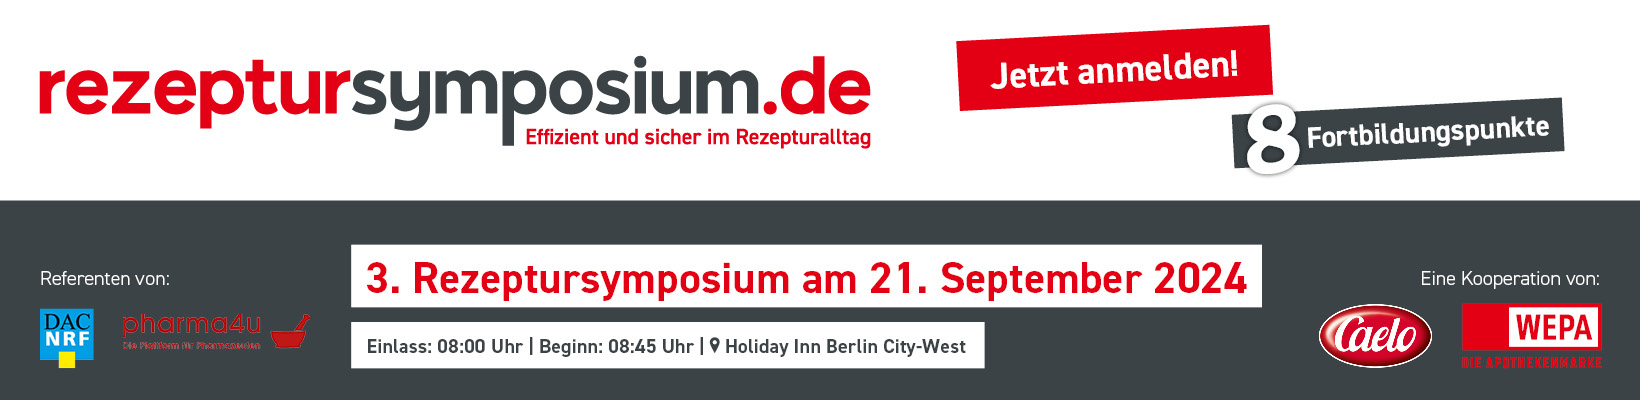 JETZT ANMELDEN - 3. Rezeptursymposium Berlin, 21.09.2024